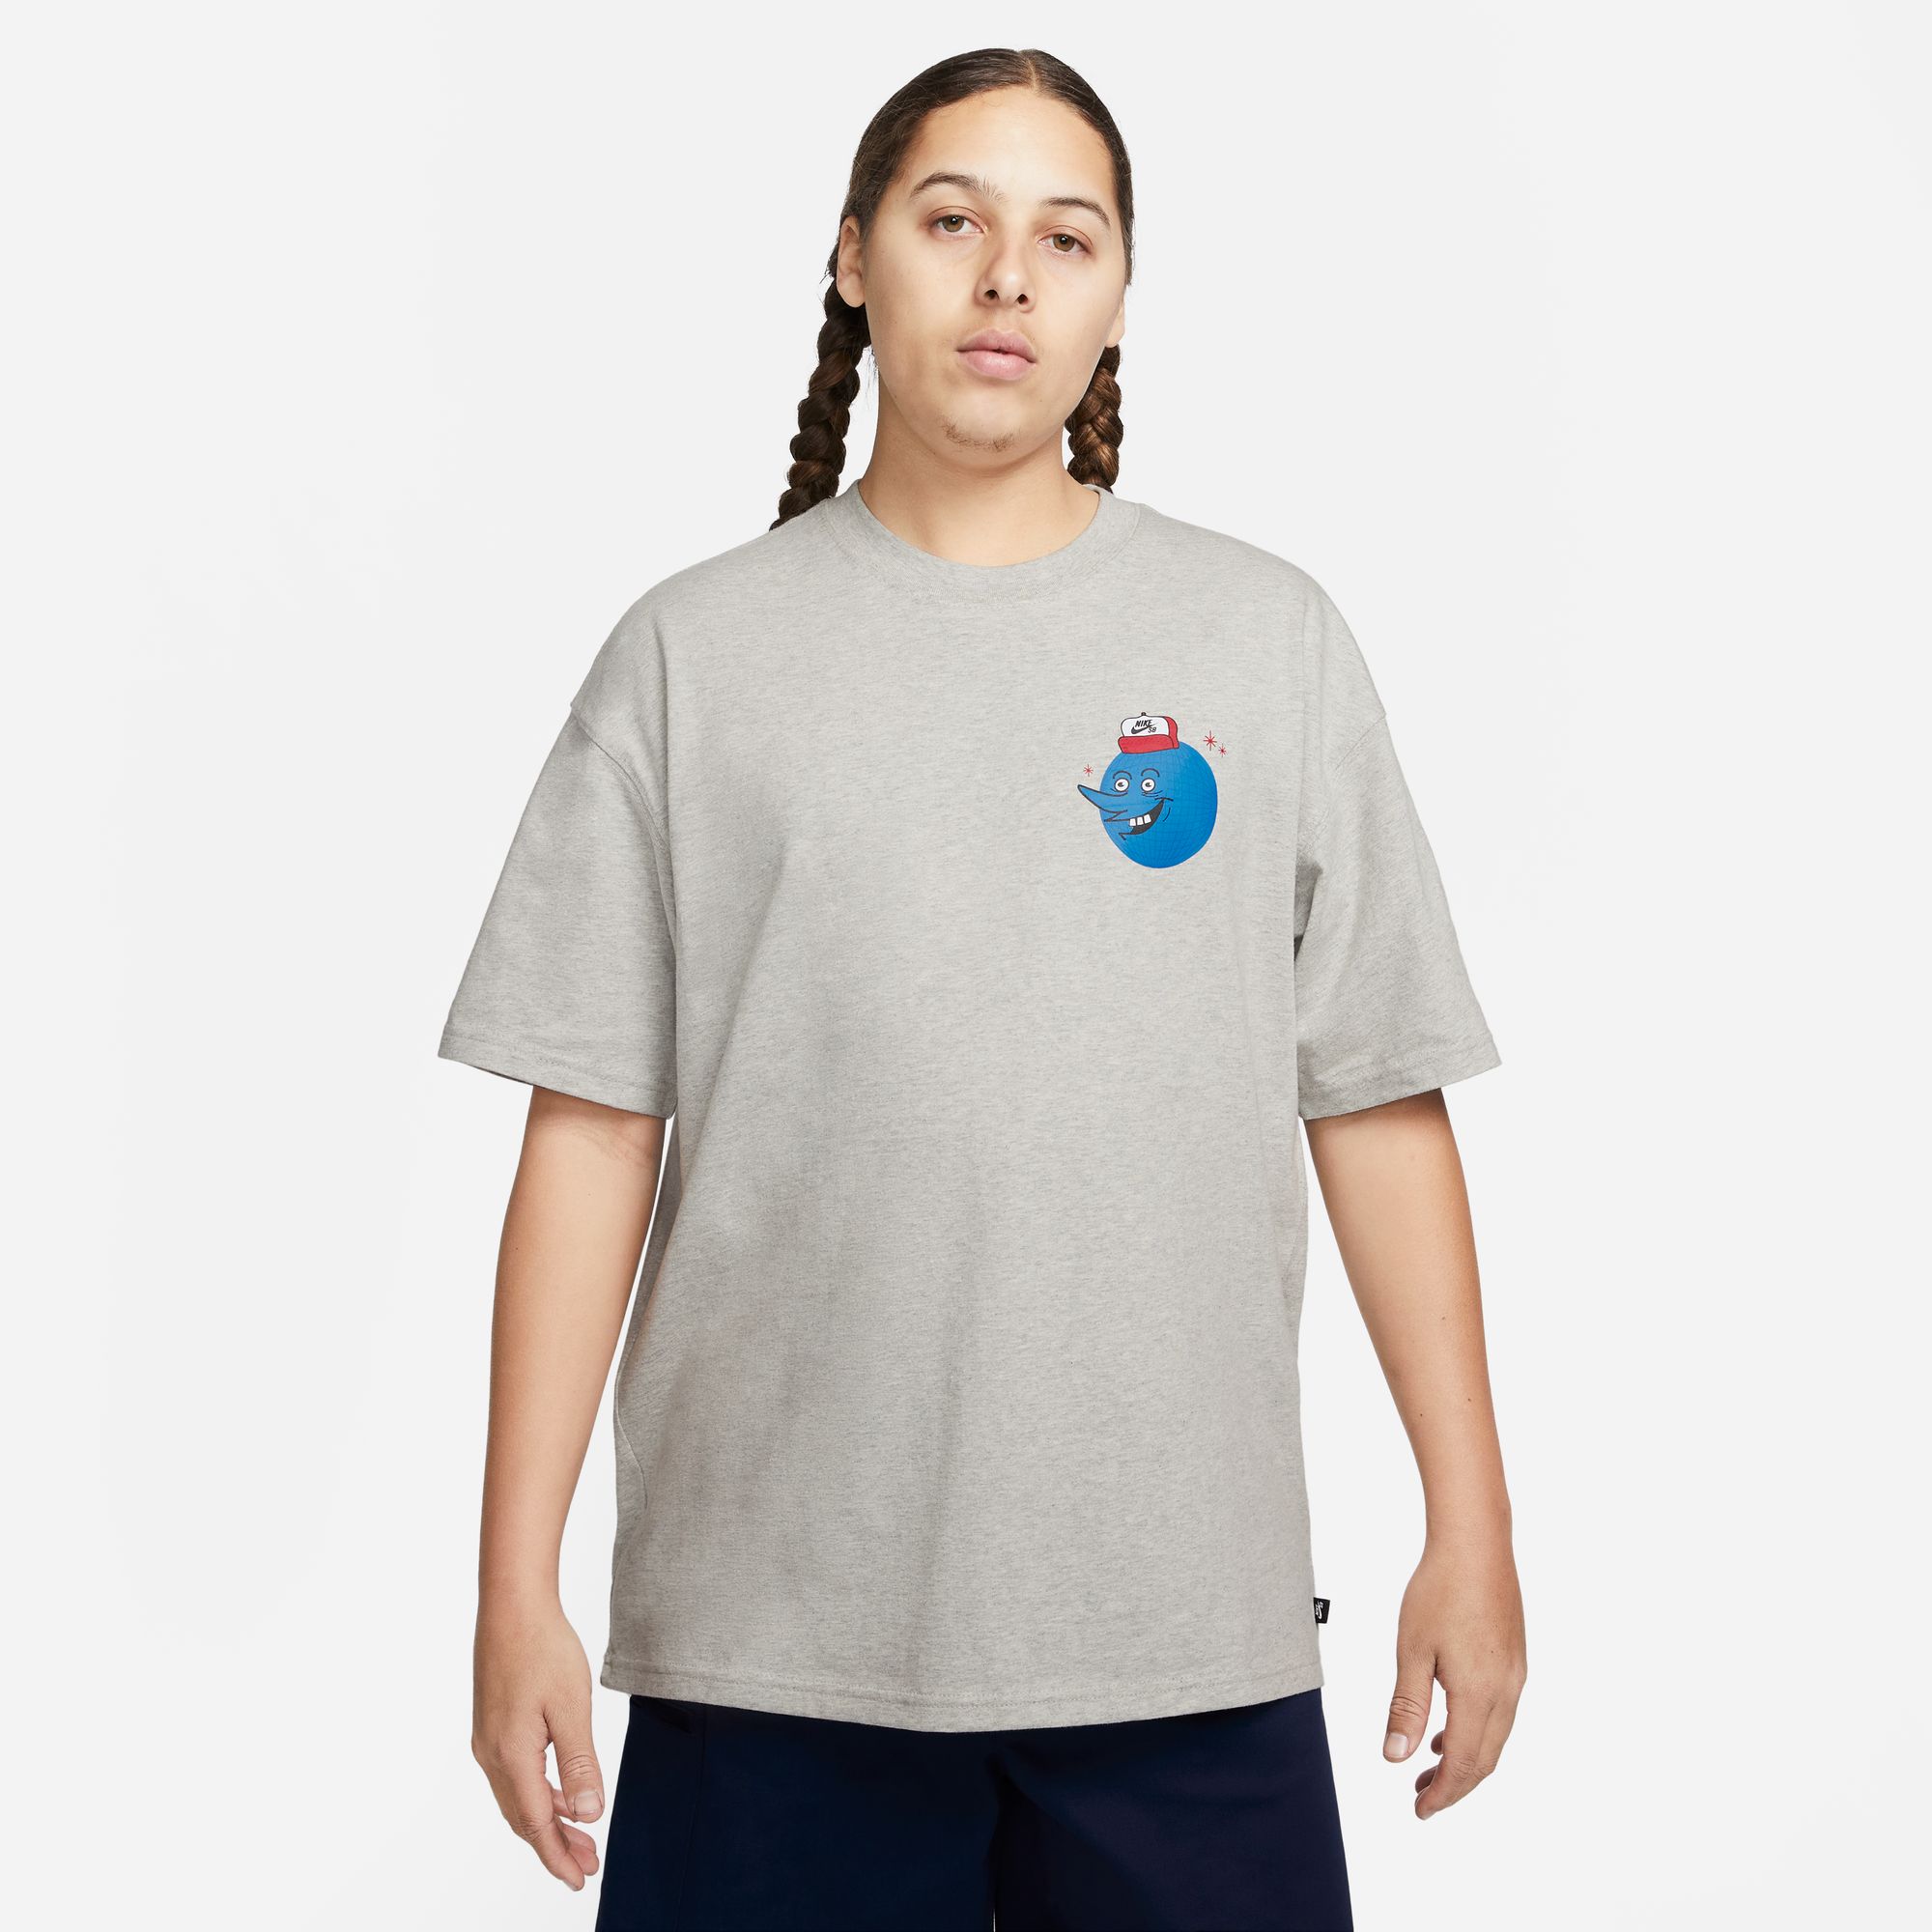 Nike SB Men's Skate T-Shirt Just Be Here Grey 01